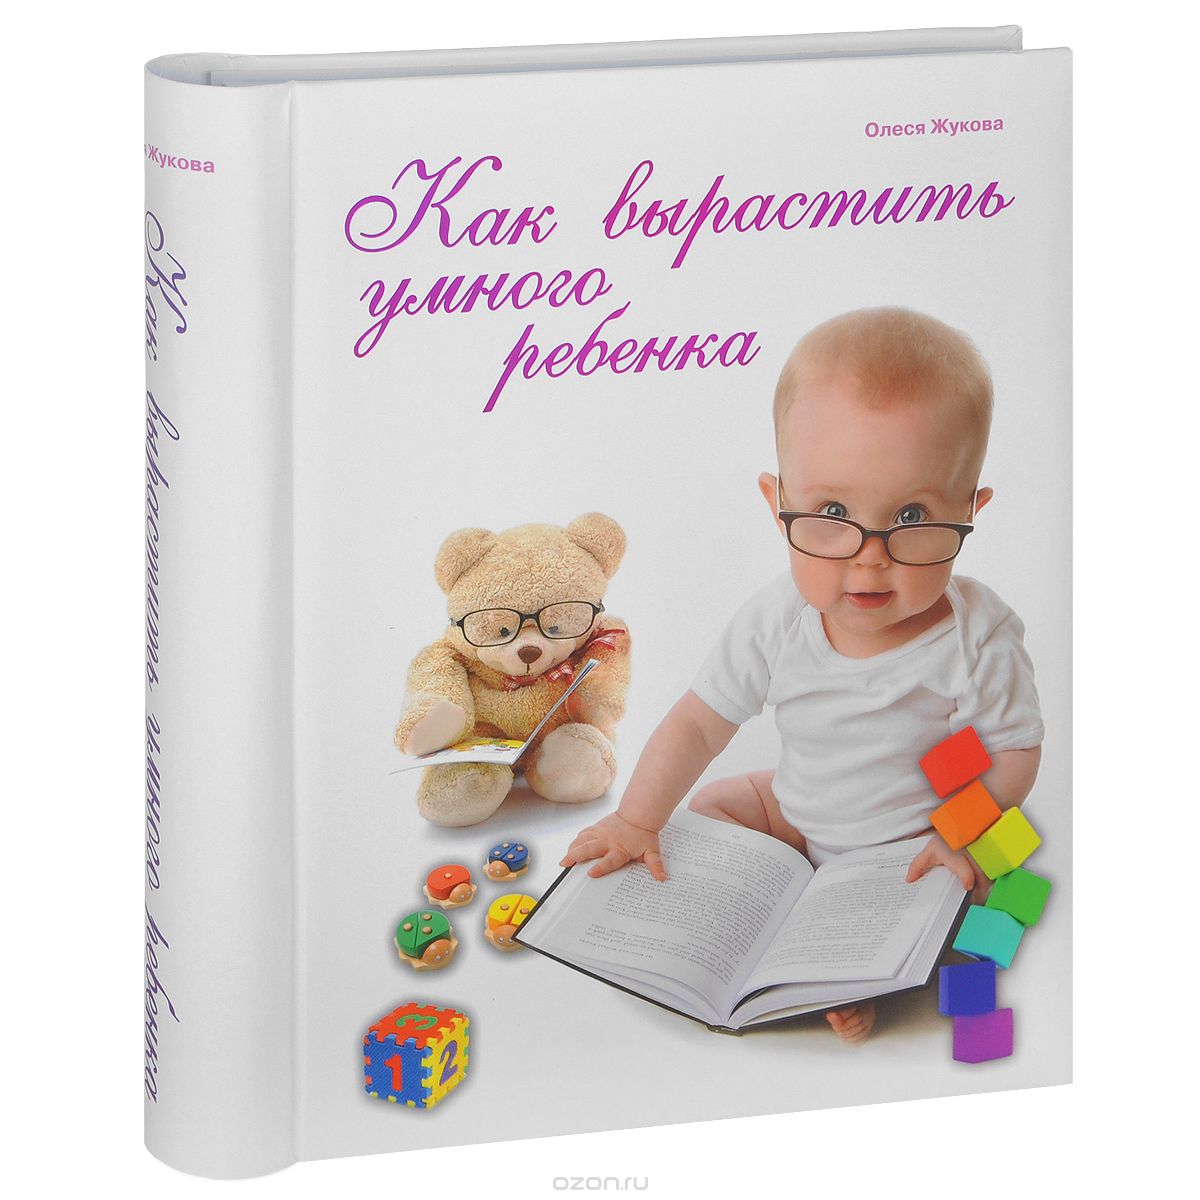 Скачать книгу "Как вырастить умного ребенка, Олеся Жукова"